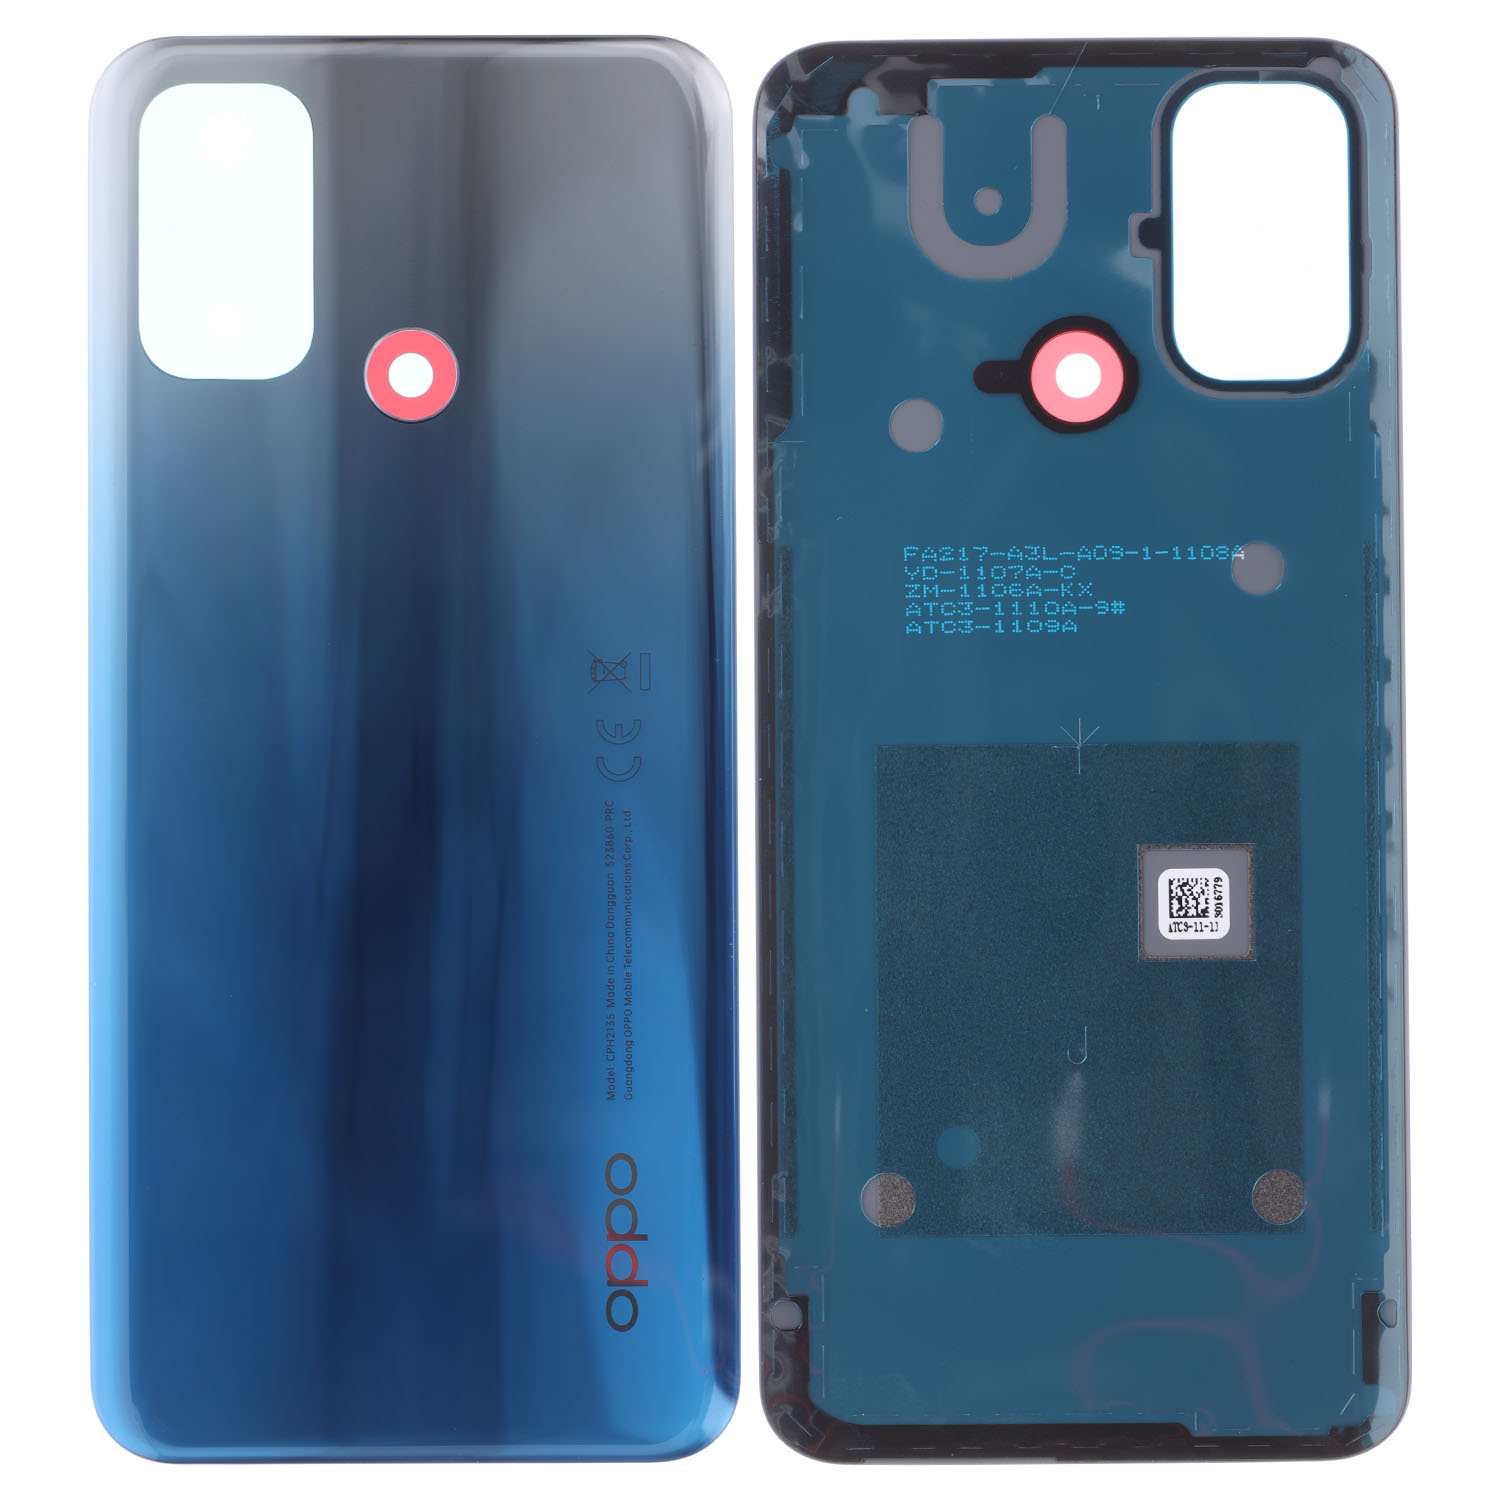 Oppo A53 (CPH2127, CPH2131), A53s (CPH2139, CPH2135) Battery Cover, Blue